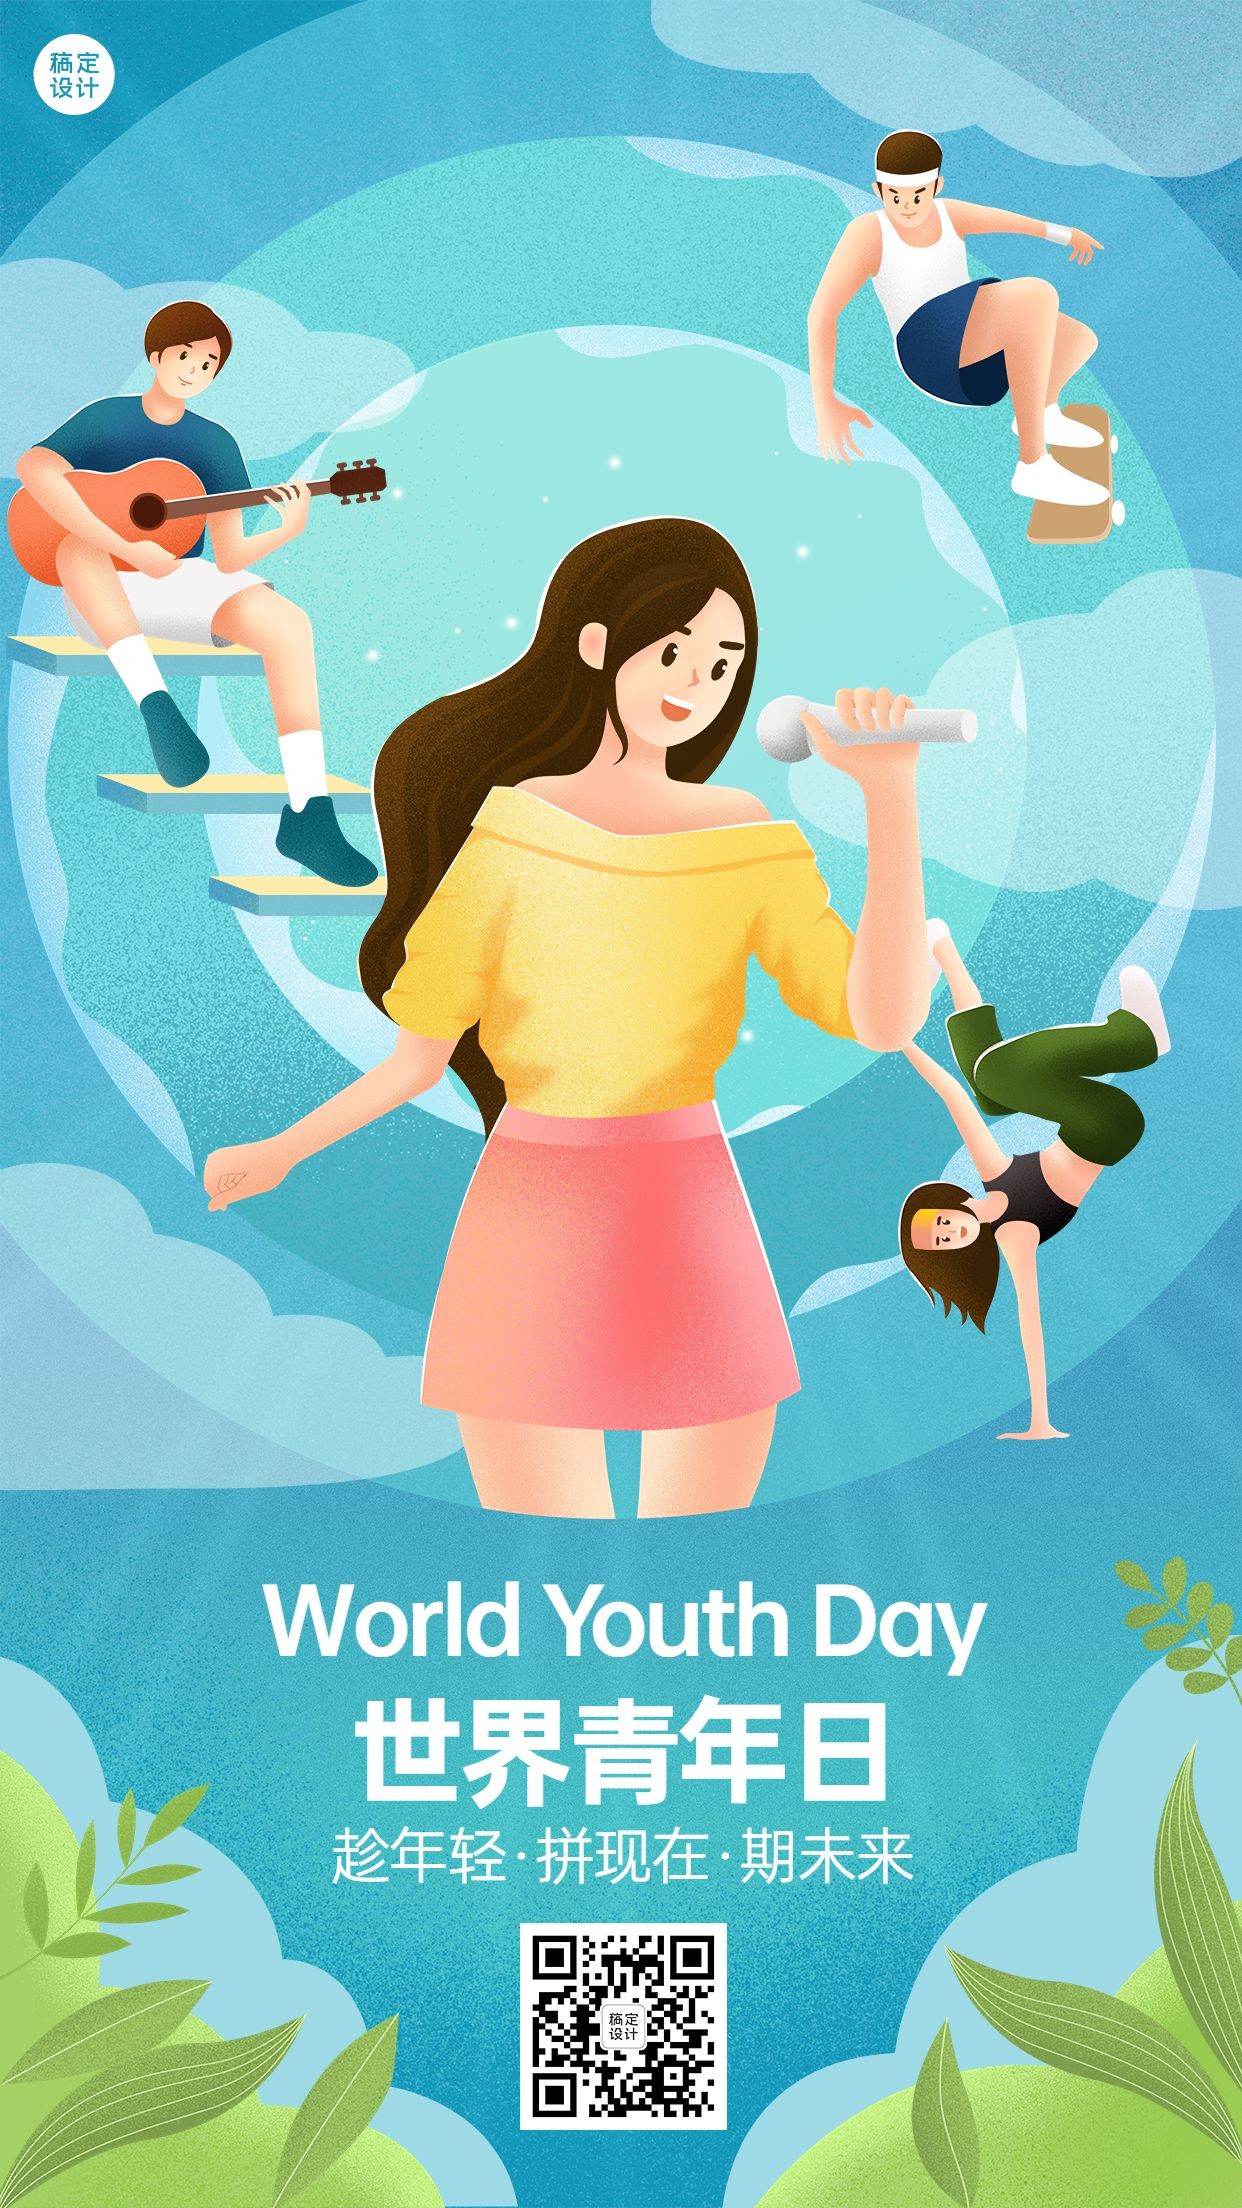 世界青年节节日宣传手机海报预览效果